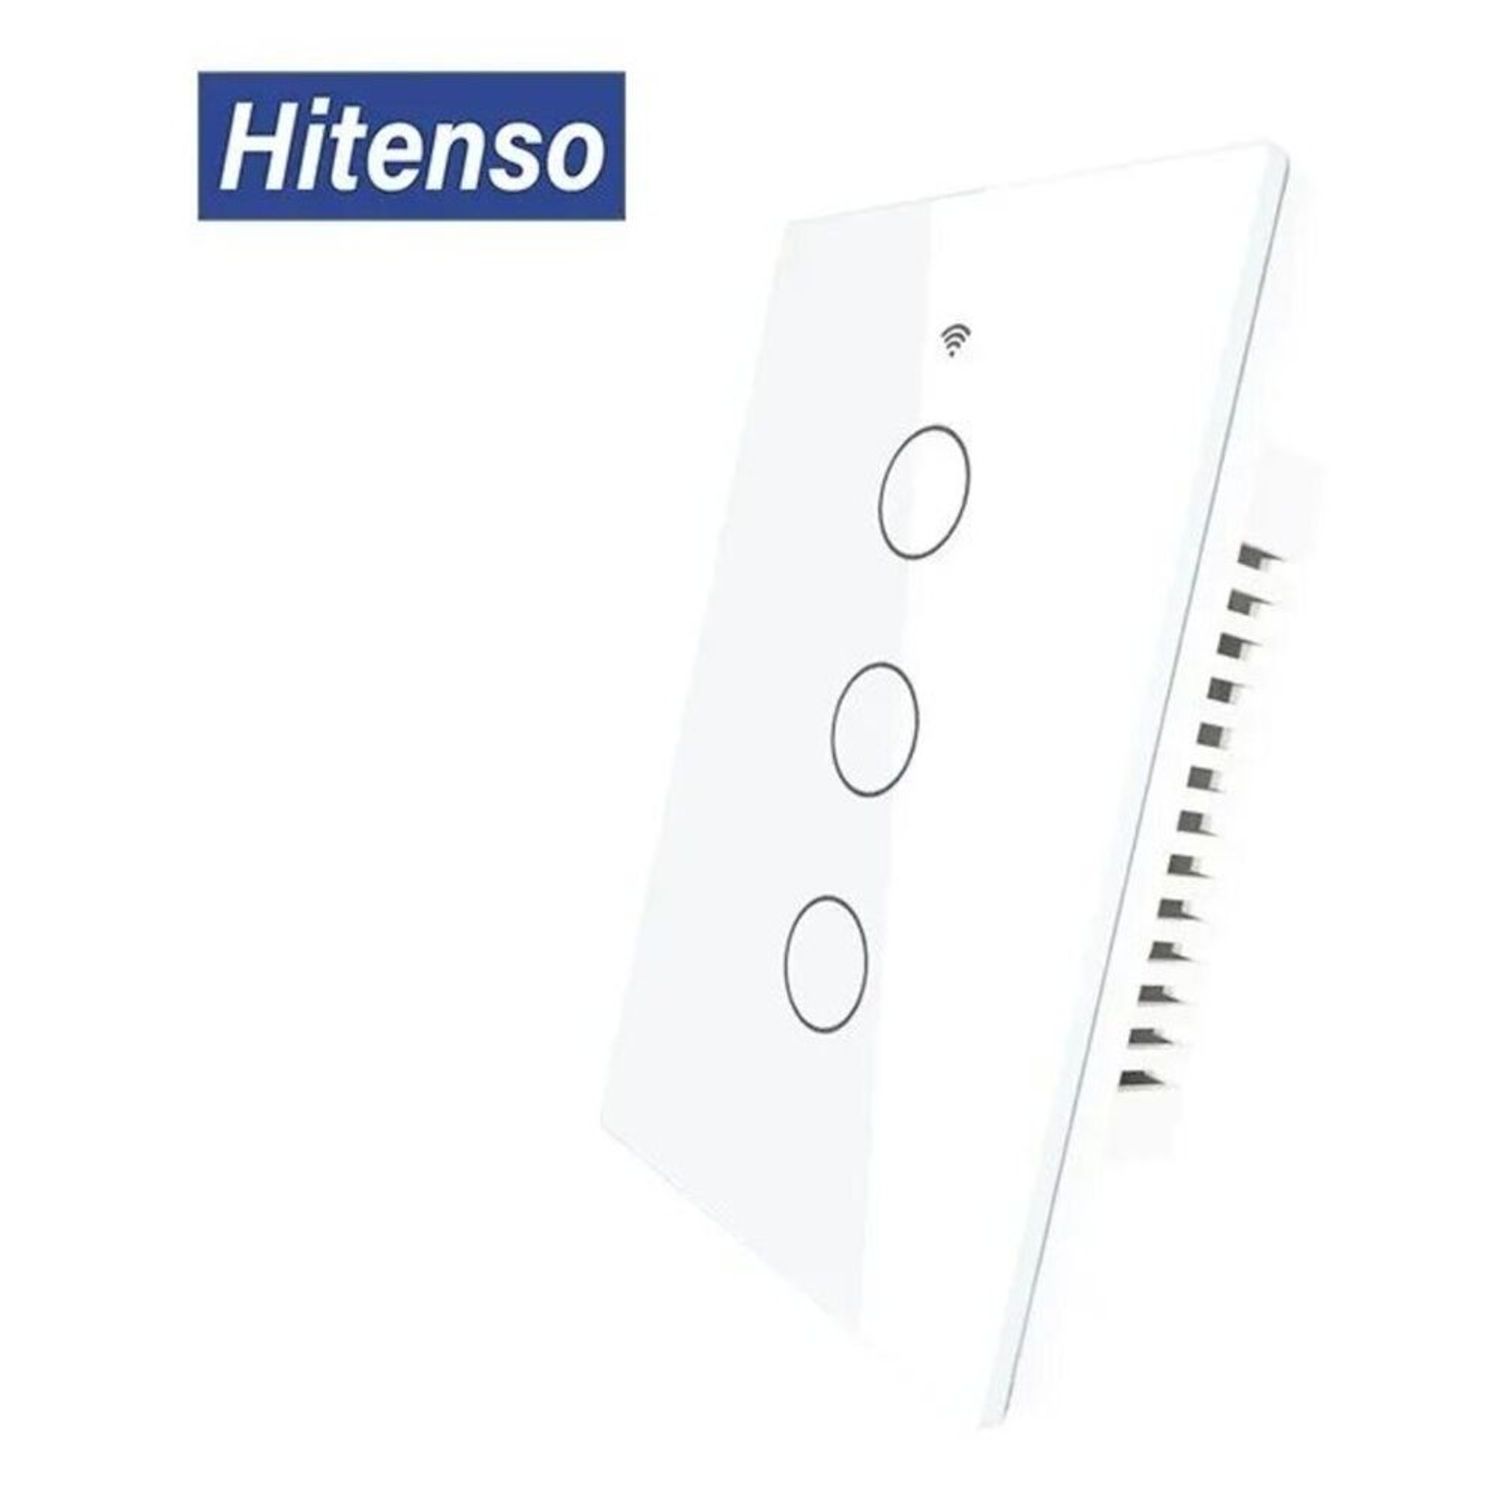 Interruptor Smart de pared Sin Neutro 3bot blanco I Oechsle - Oechsle